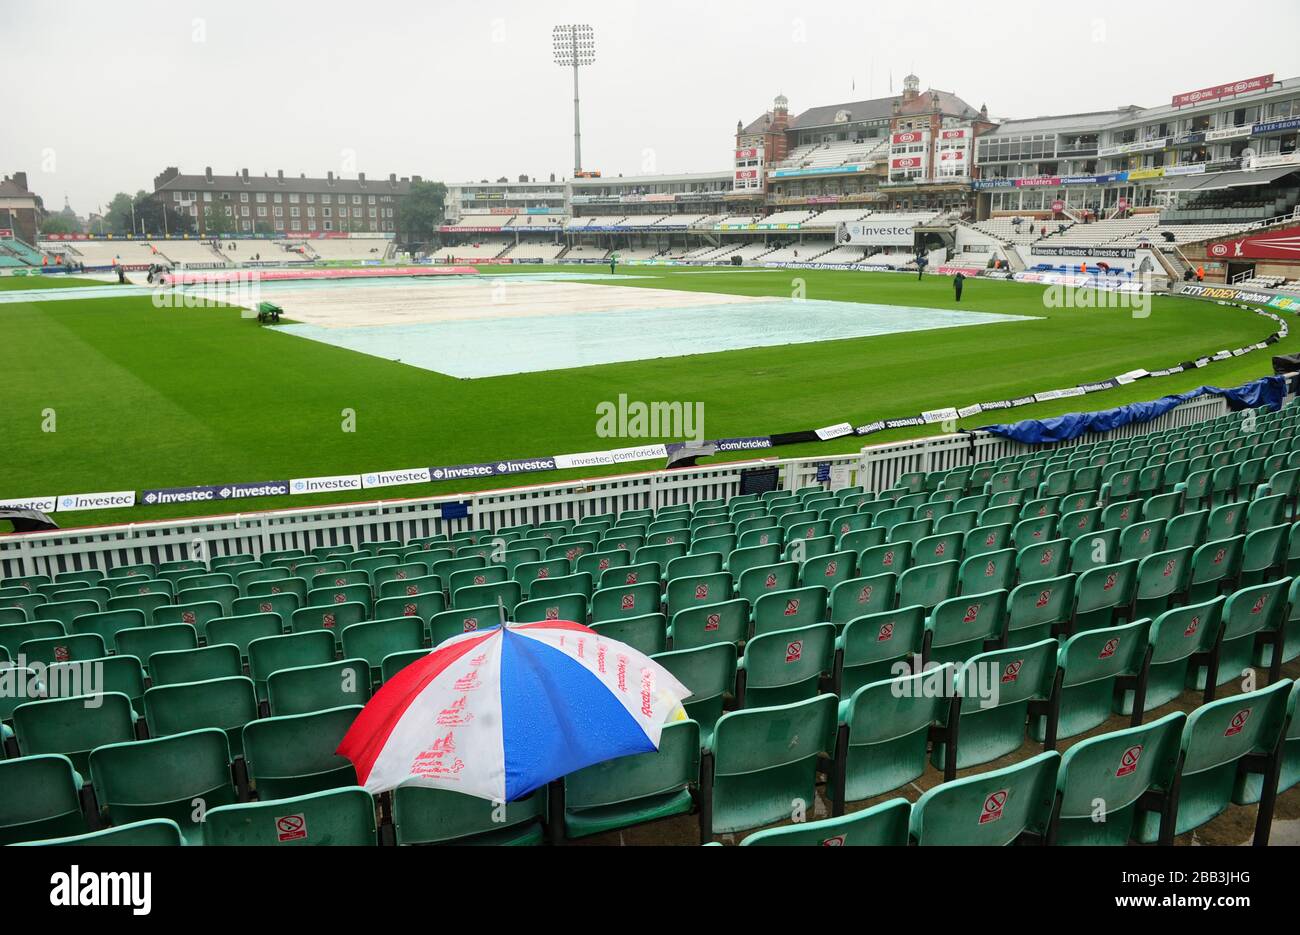 Mauvais temps retarde le début de la partie le quatrième jour du cinquième match test Investec Ashes au Kia Oval, Londres. Banque D'Images